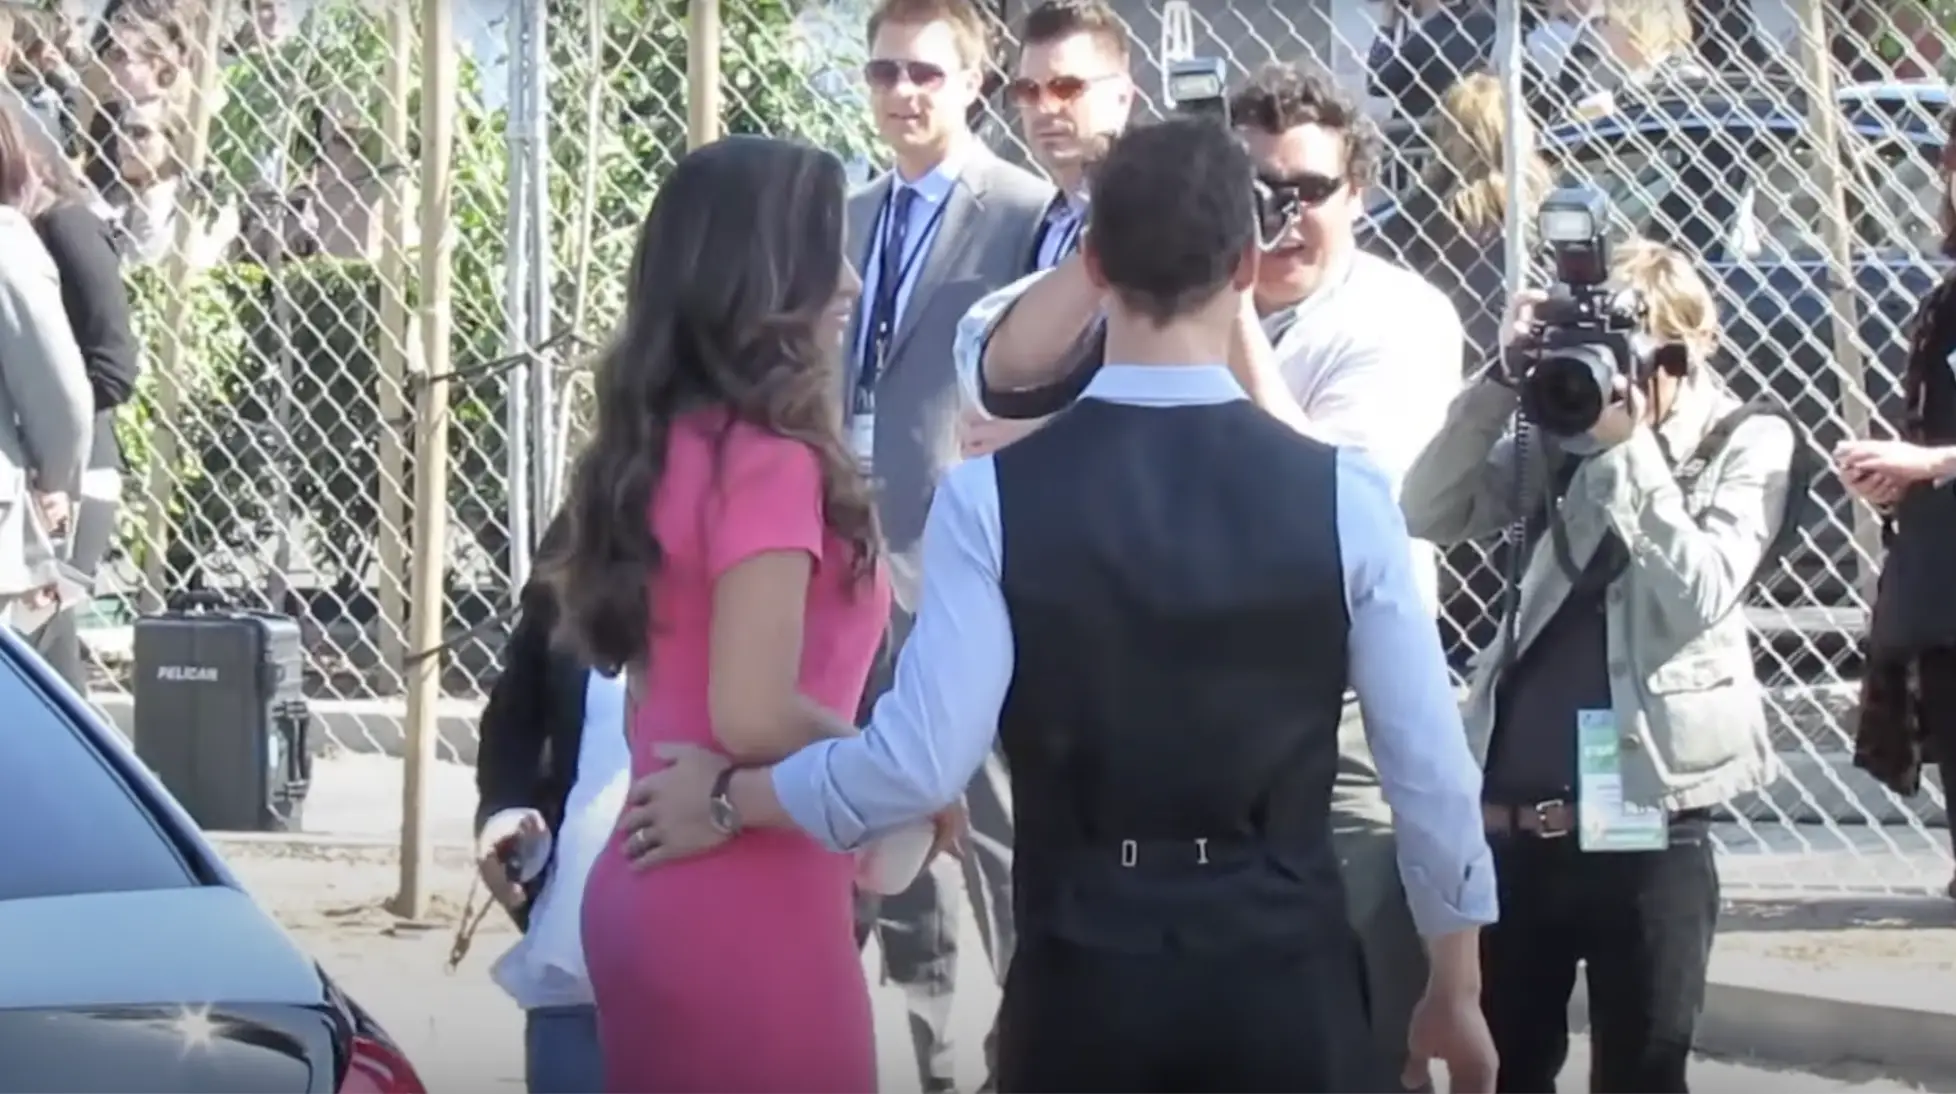 Camila Alves McConaughey und ihr Ehemann Matthew McConaughey bei der Ankunft zu einer Veranstaltung in Los Angeles am 7. Juli 2023 | Quelle: YouTube/Promi WotNot